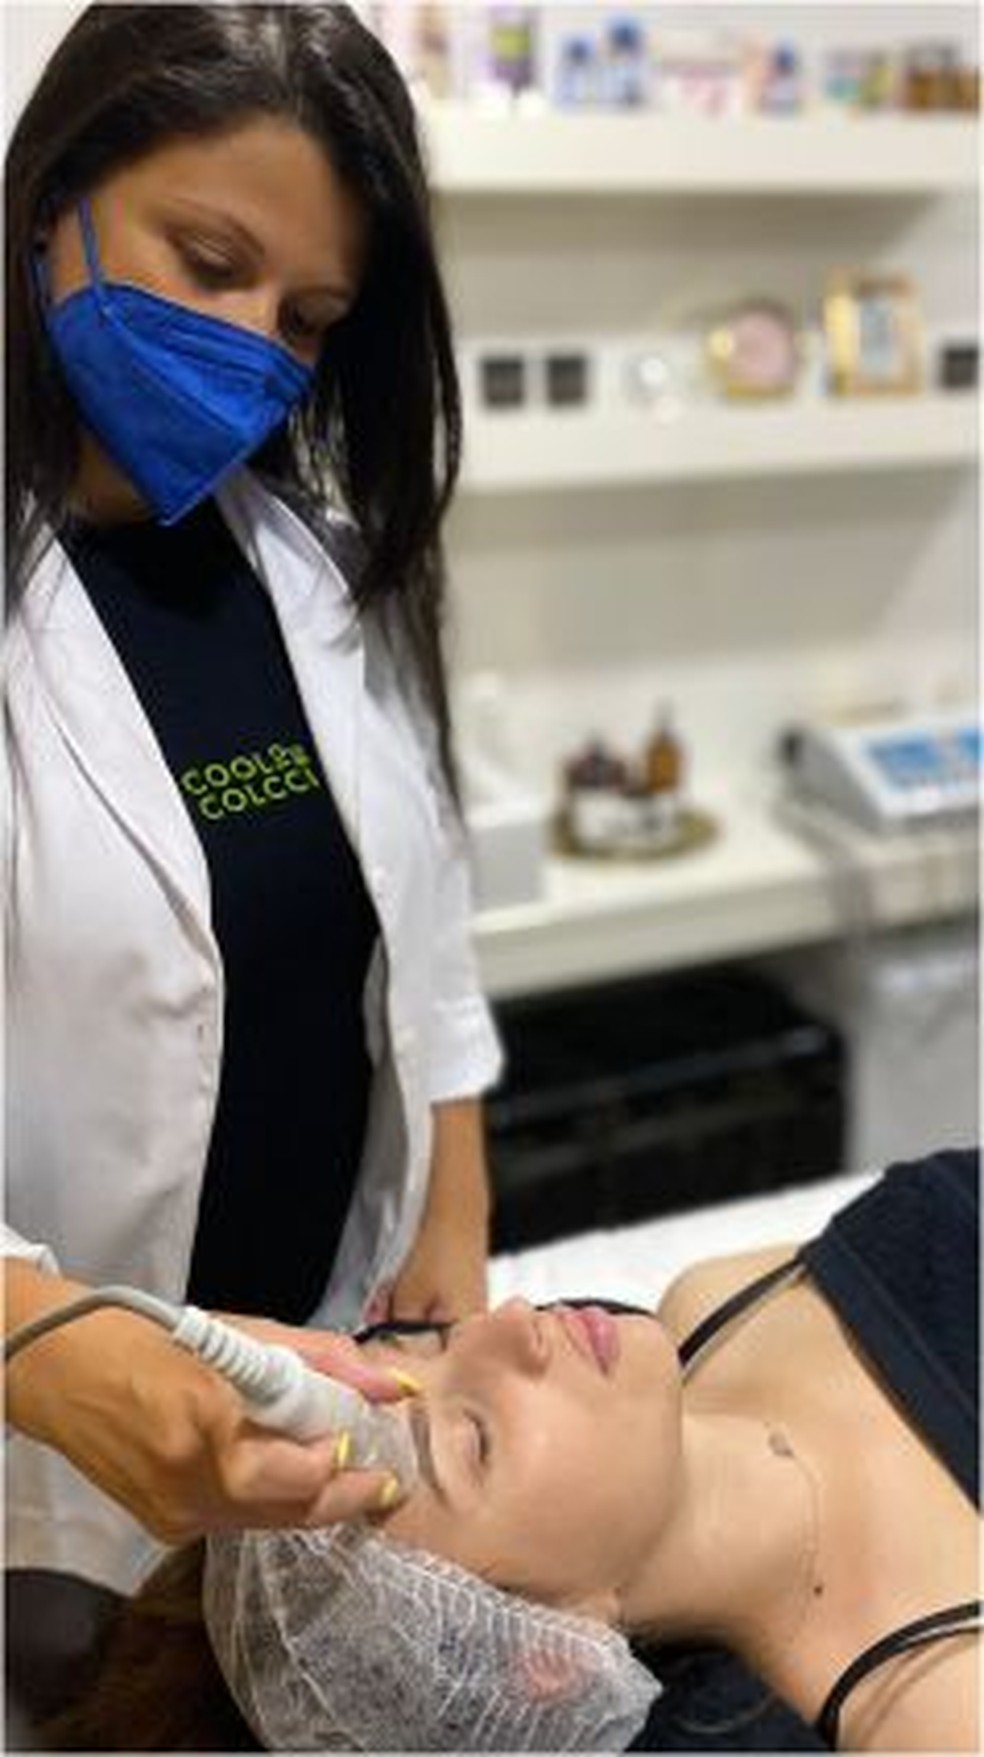 Goiânia ganha nova clínica especializada em estética facial e corporal